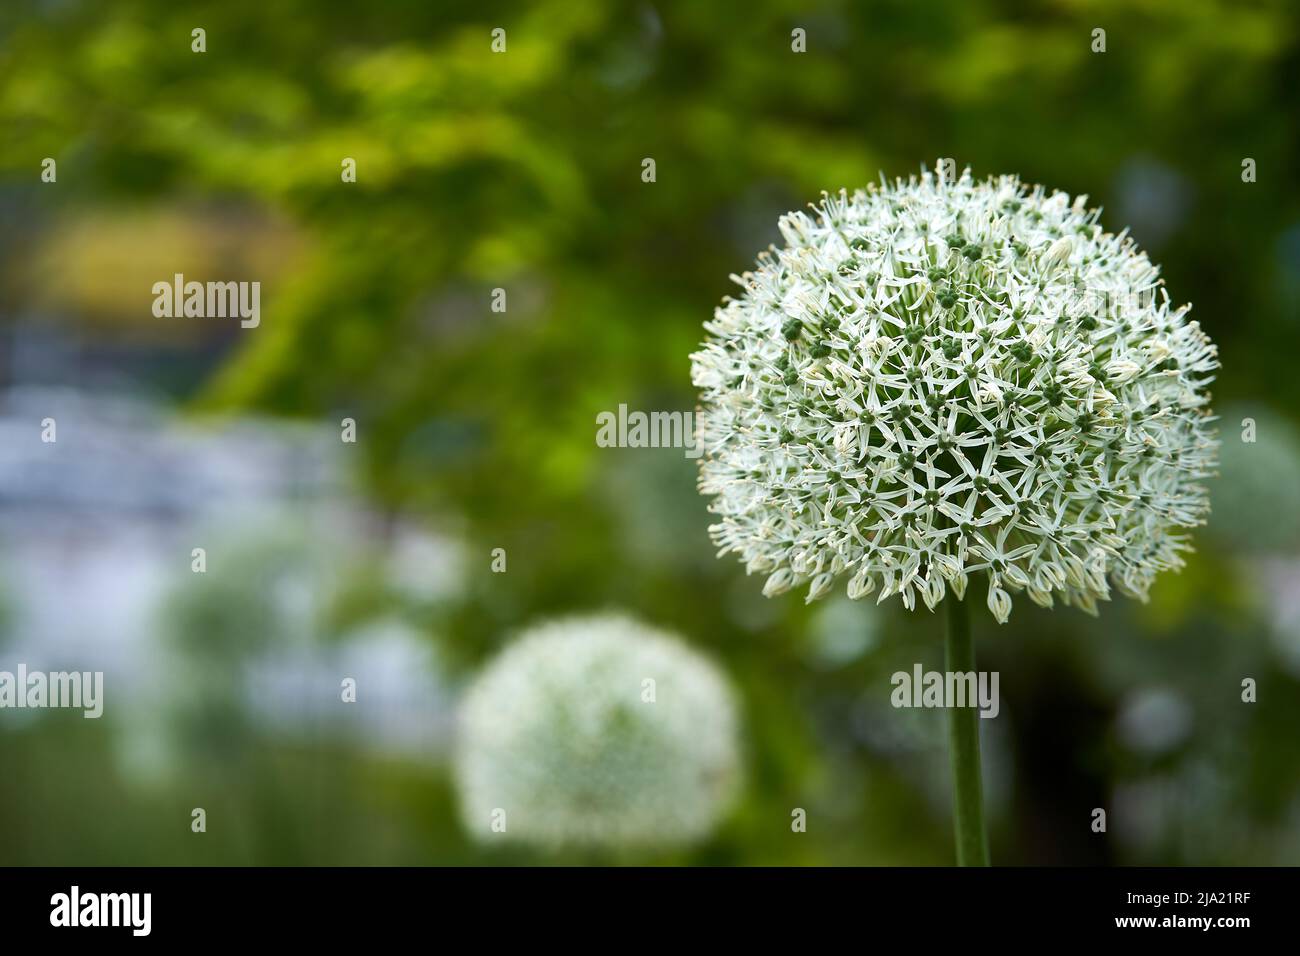 Fokus auf weißem Allium-Blütenkopf im Vordergrund mit weichem Grün im Hintergrund Stockfoto